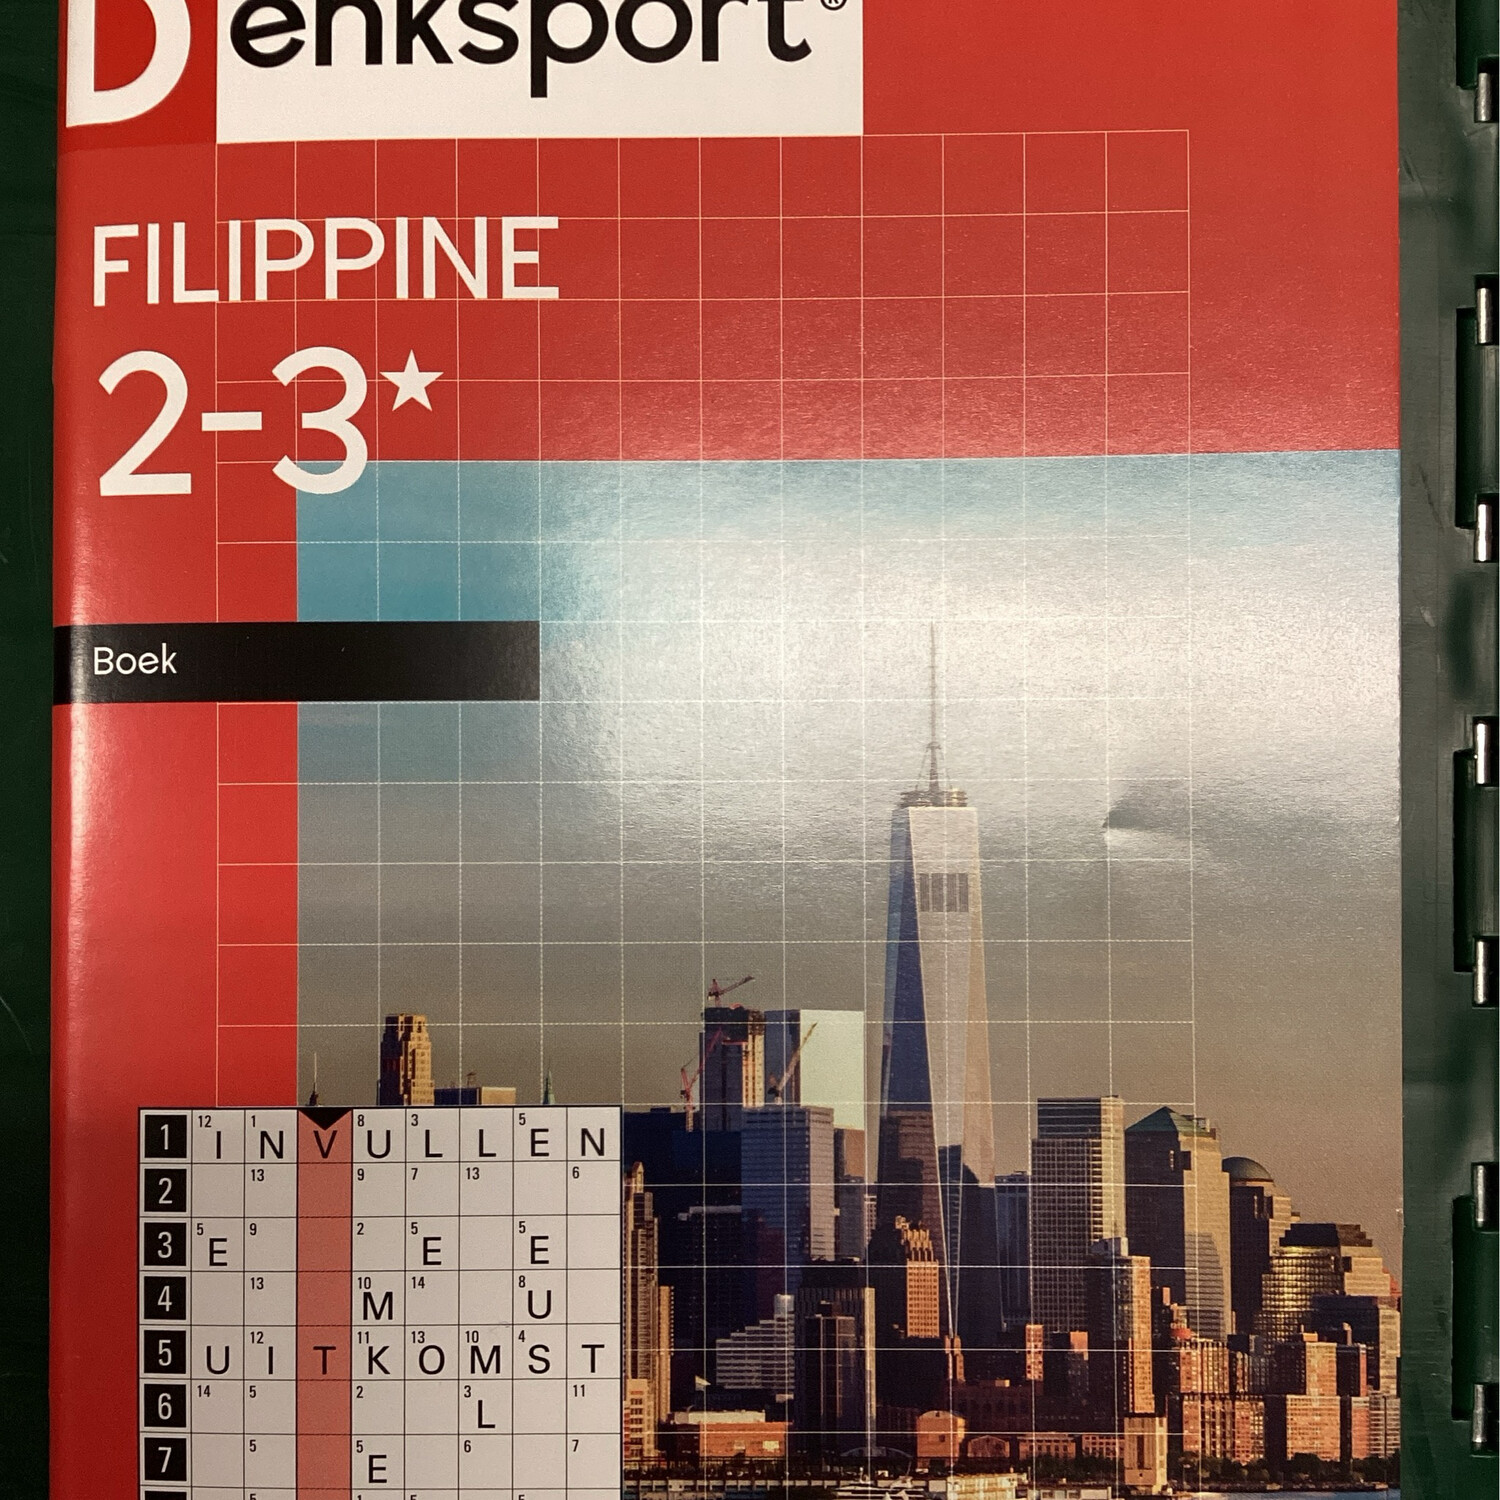 DS FILIPINNE 2-3*BOEK 115